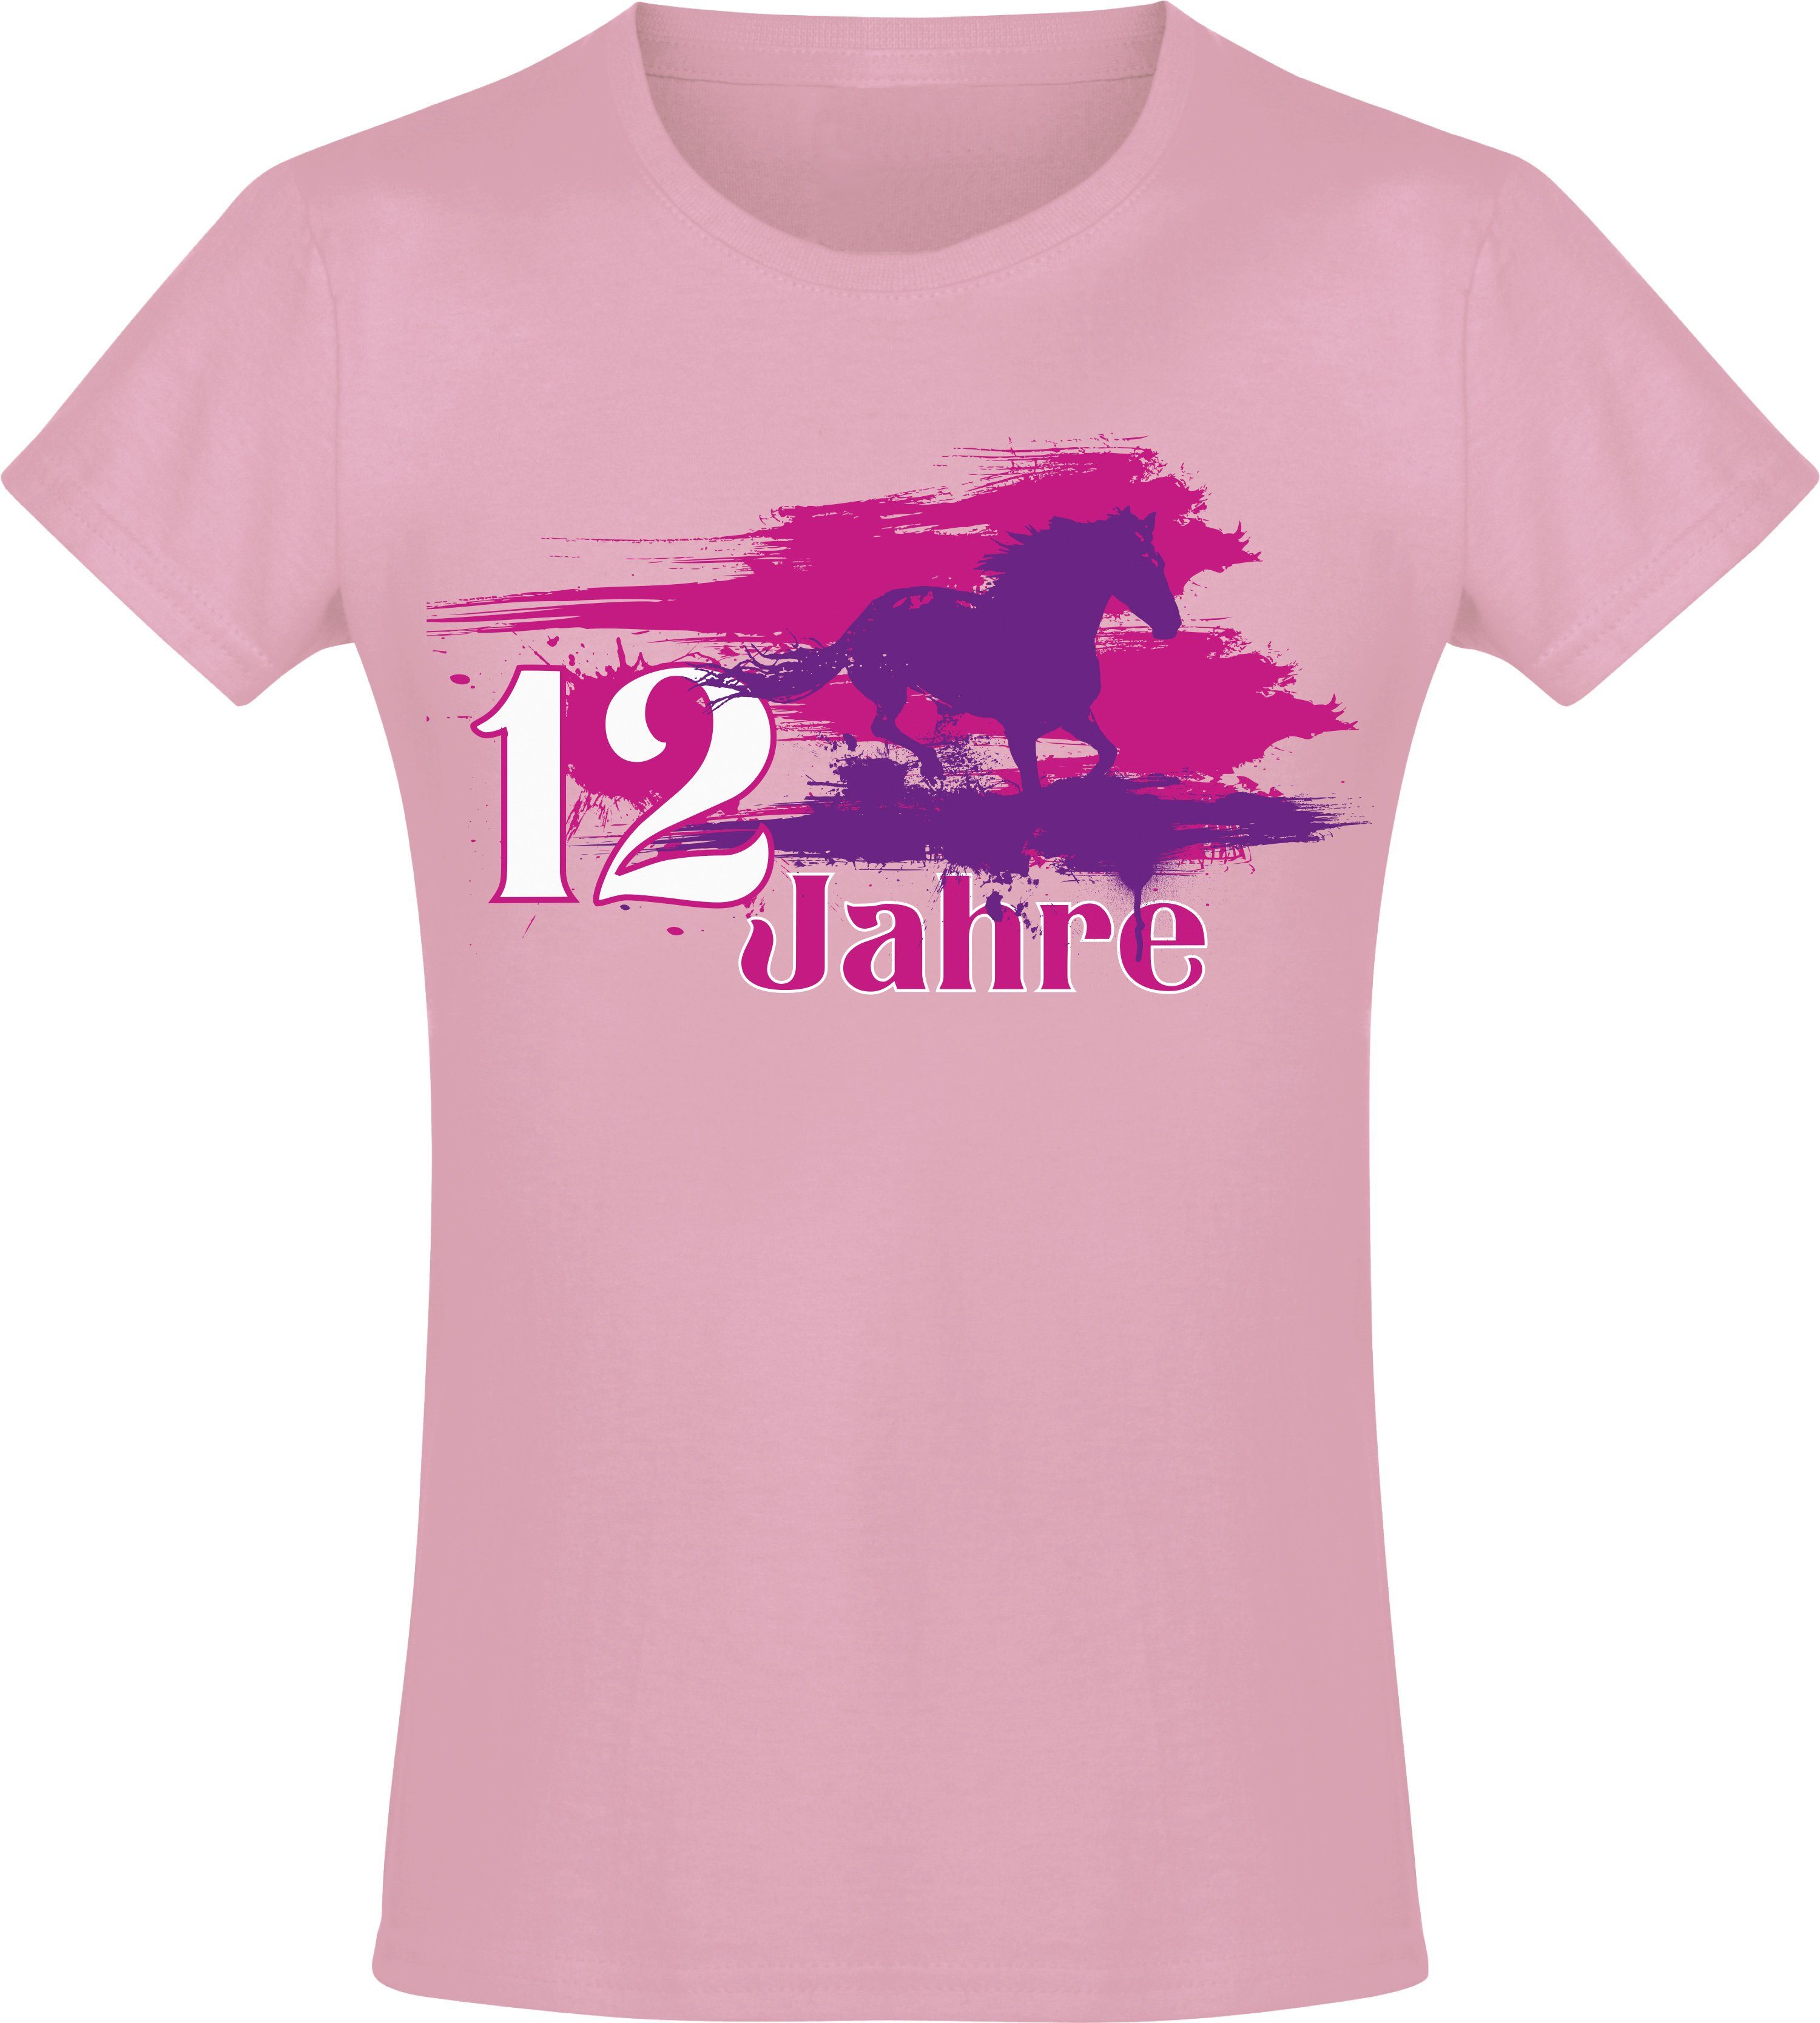 Baddery Print-Shirt Geburtstagsgeschenk für Geburtstagspferd Siebdruck, Baumwolle hochwertiger : aus 12 Mädchen Jahre